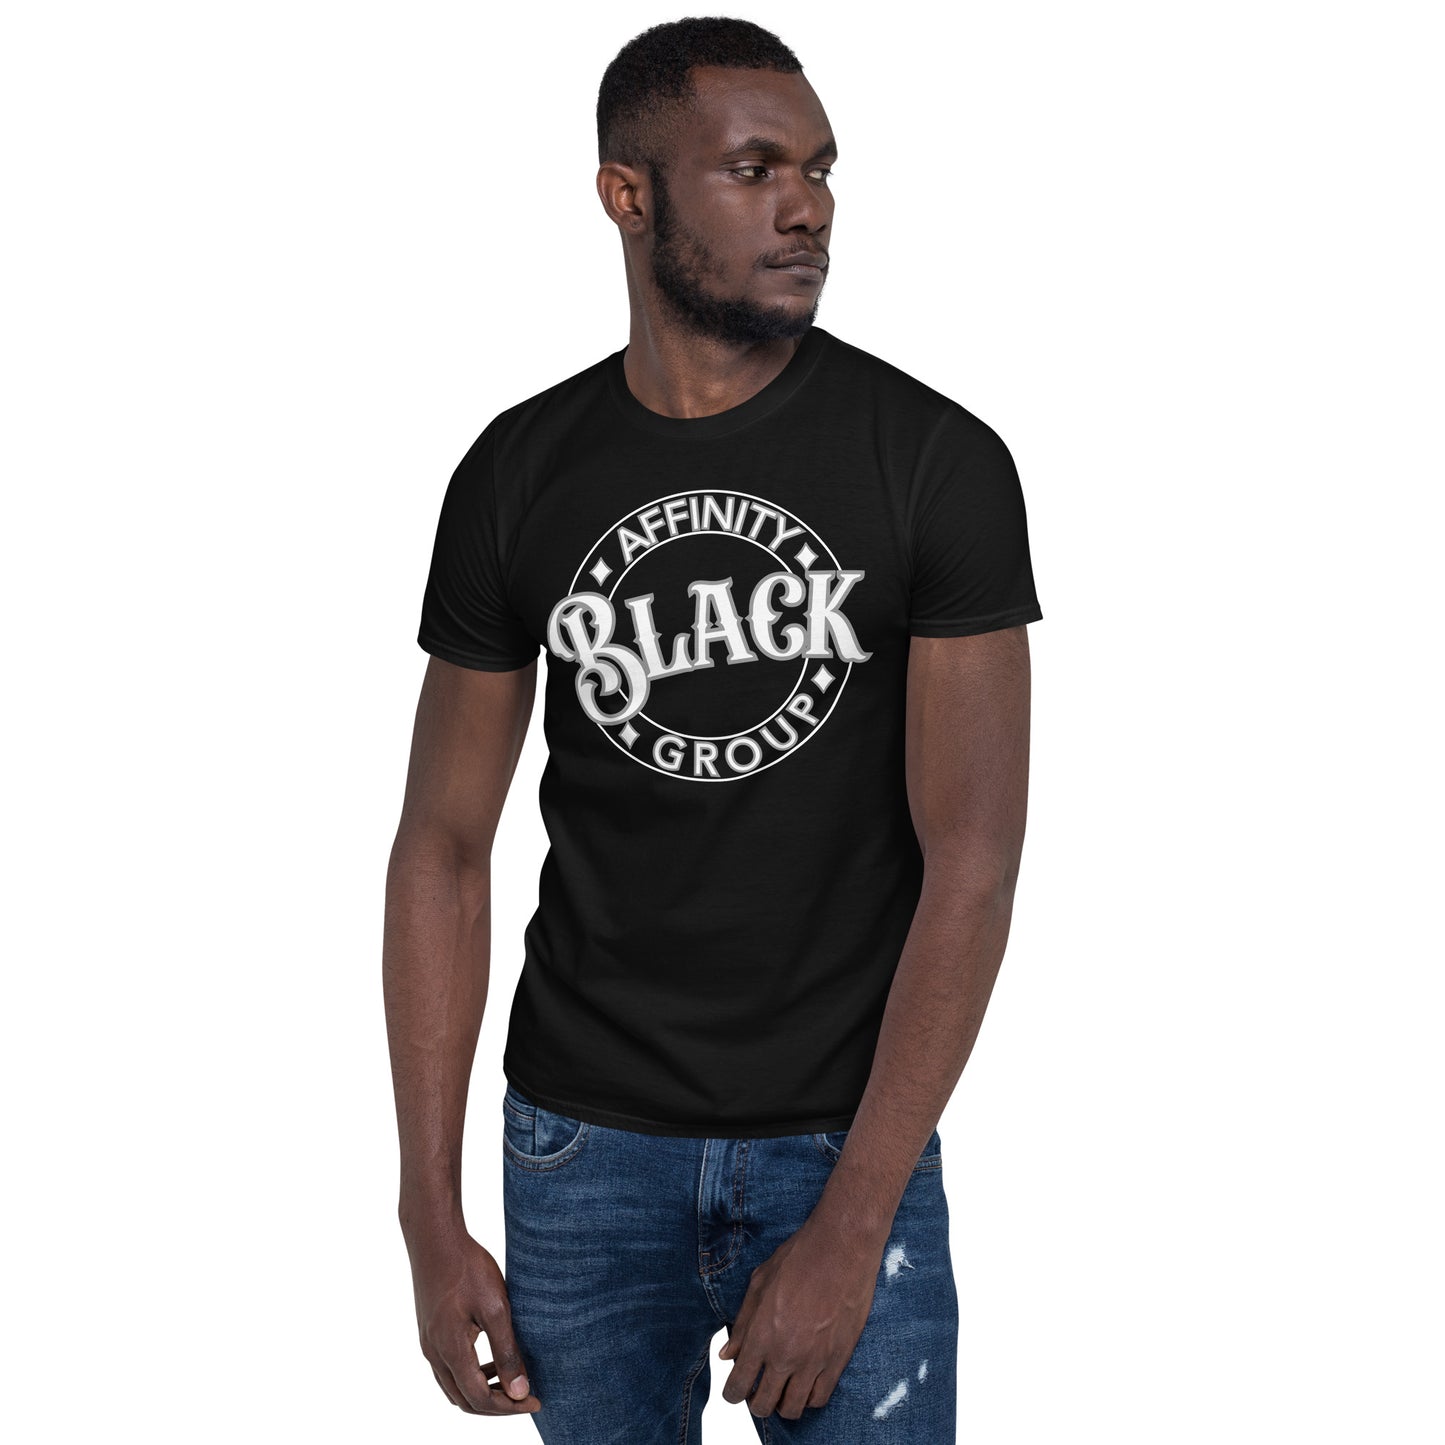 Black Affinity Group WG Short-Sleeve Unisex T-Shirt